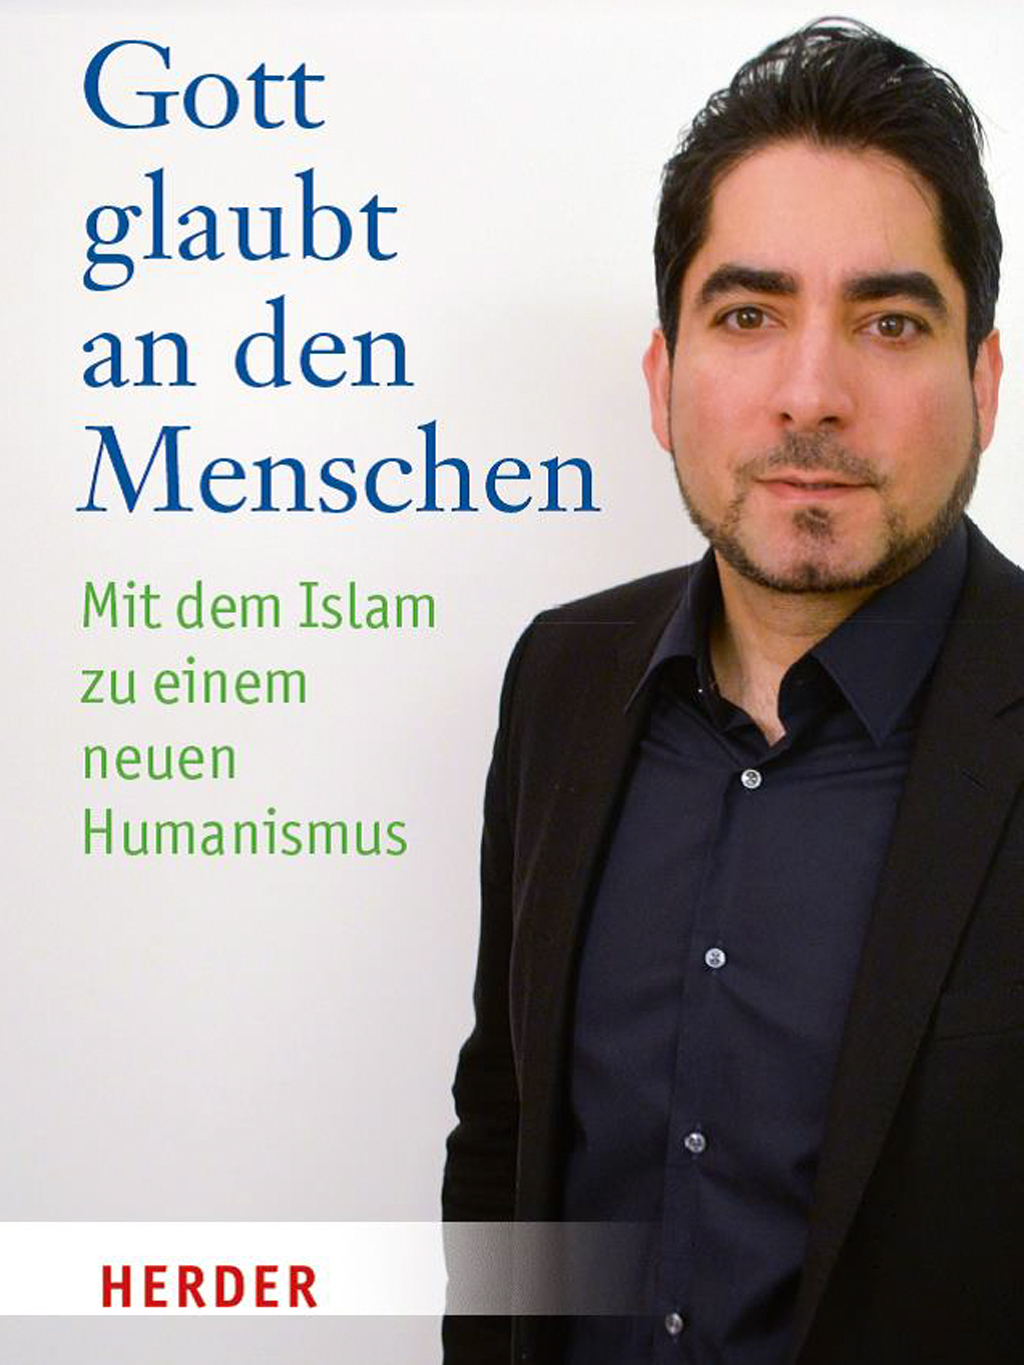 Buchcover Mouhanad Khorchide: "Gott glaubt an den Menschen. Mit dem Islam zu einem neuen Humanismus" im Verlag Herder 